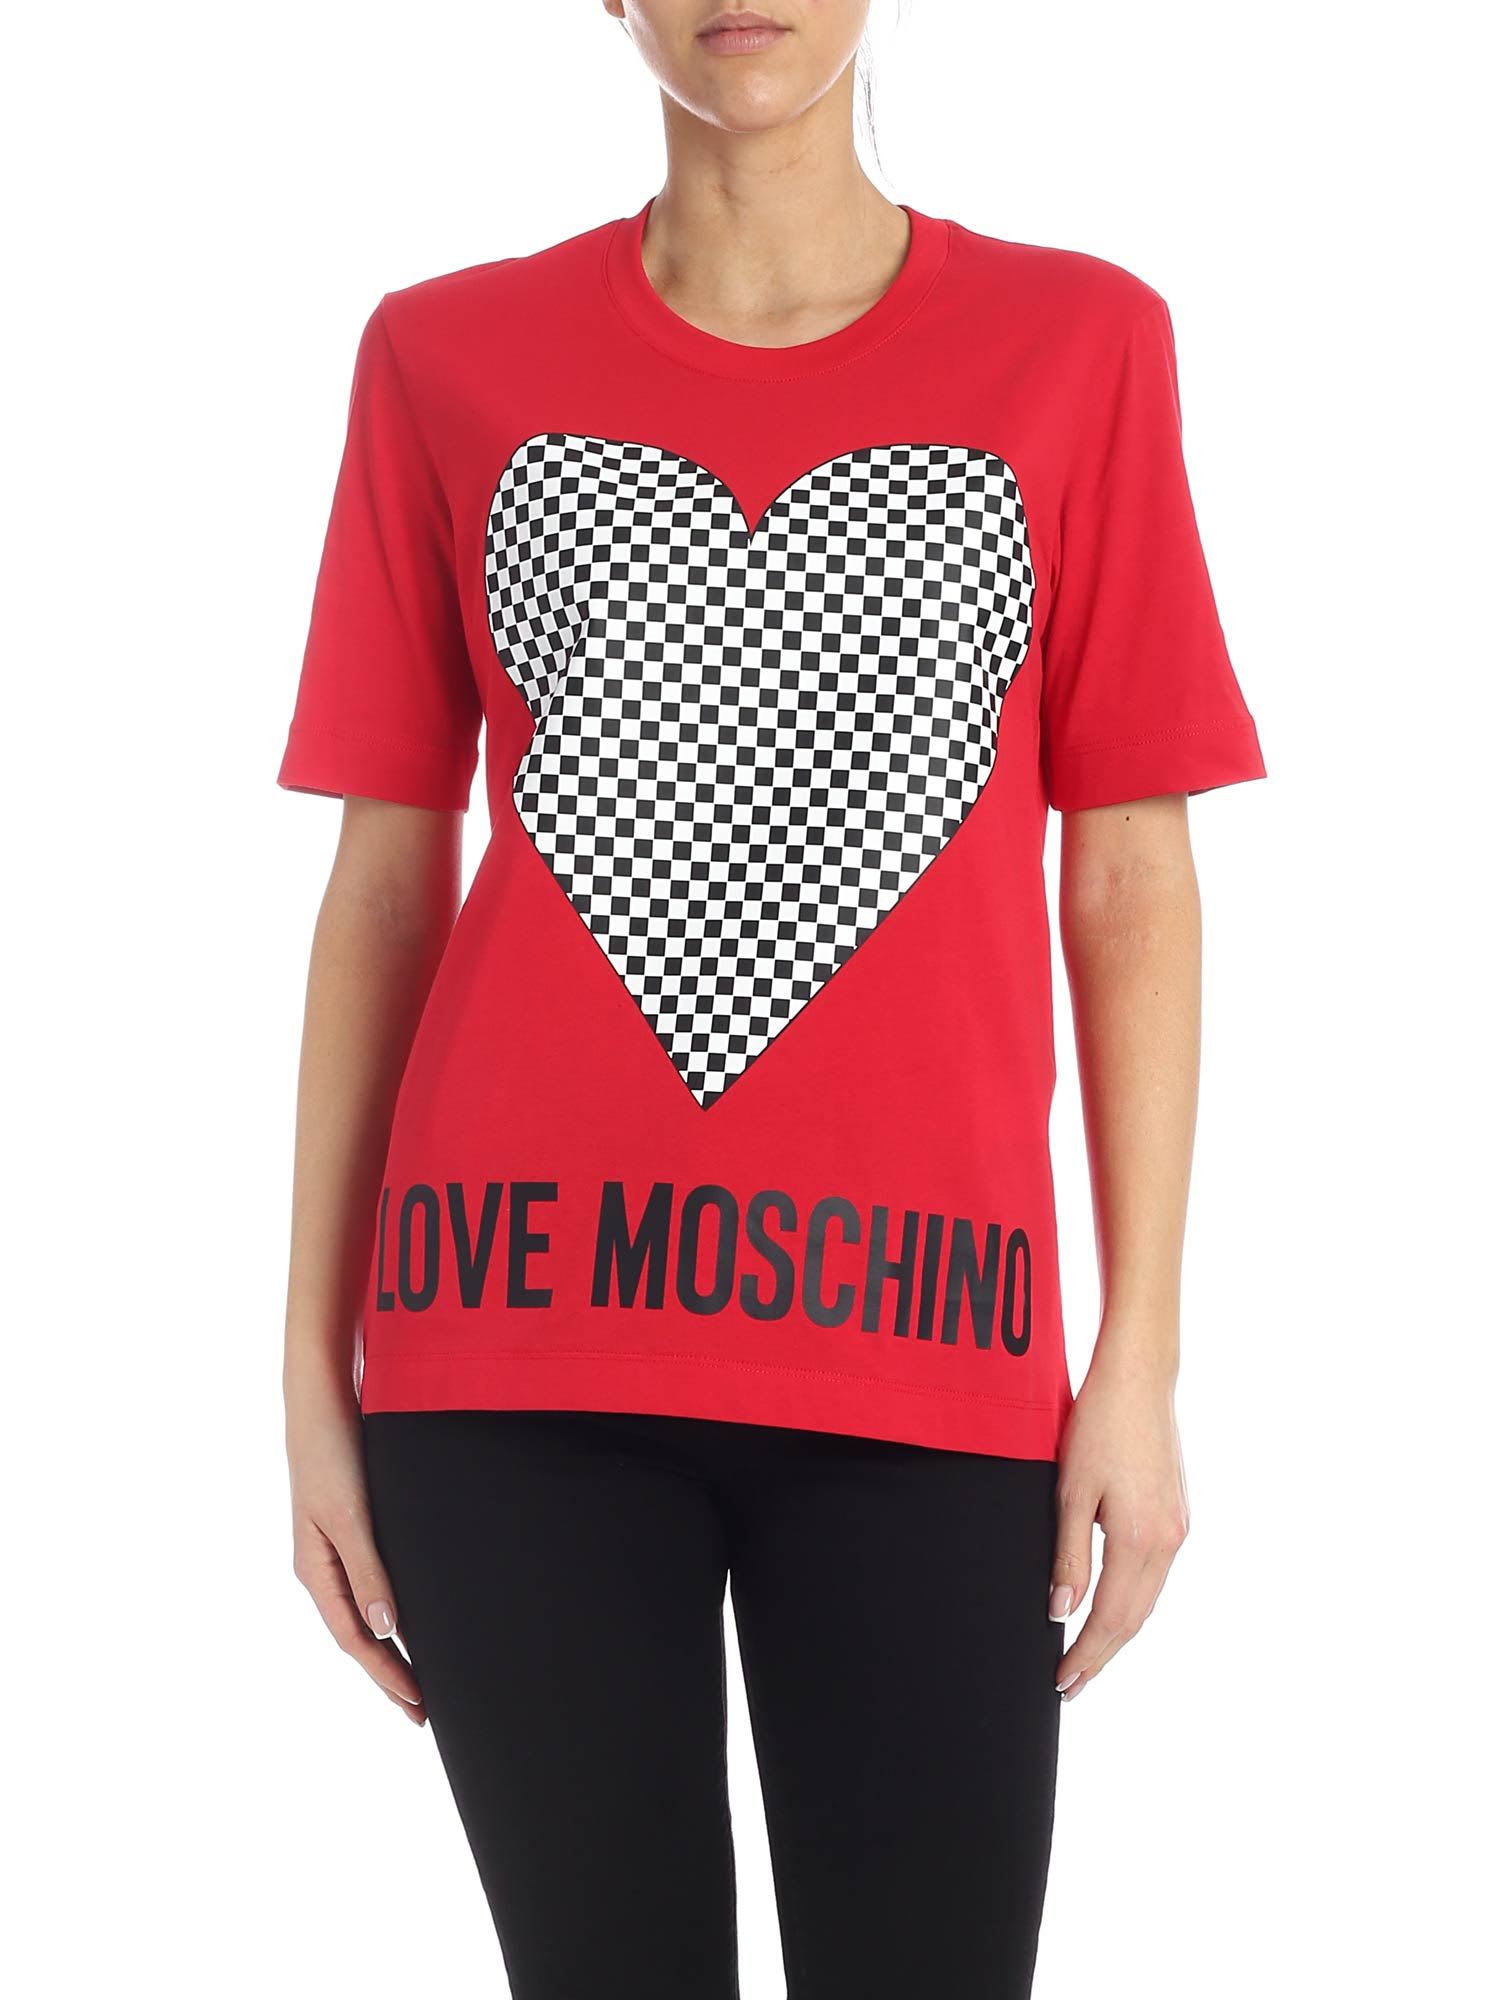 LOVE MOSCHINO T-SHIRT,11222612